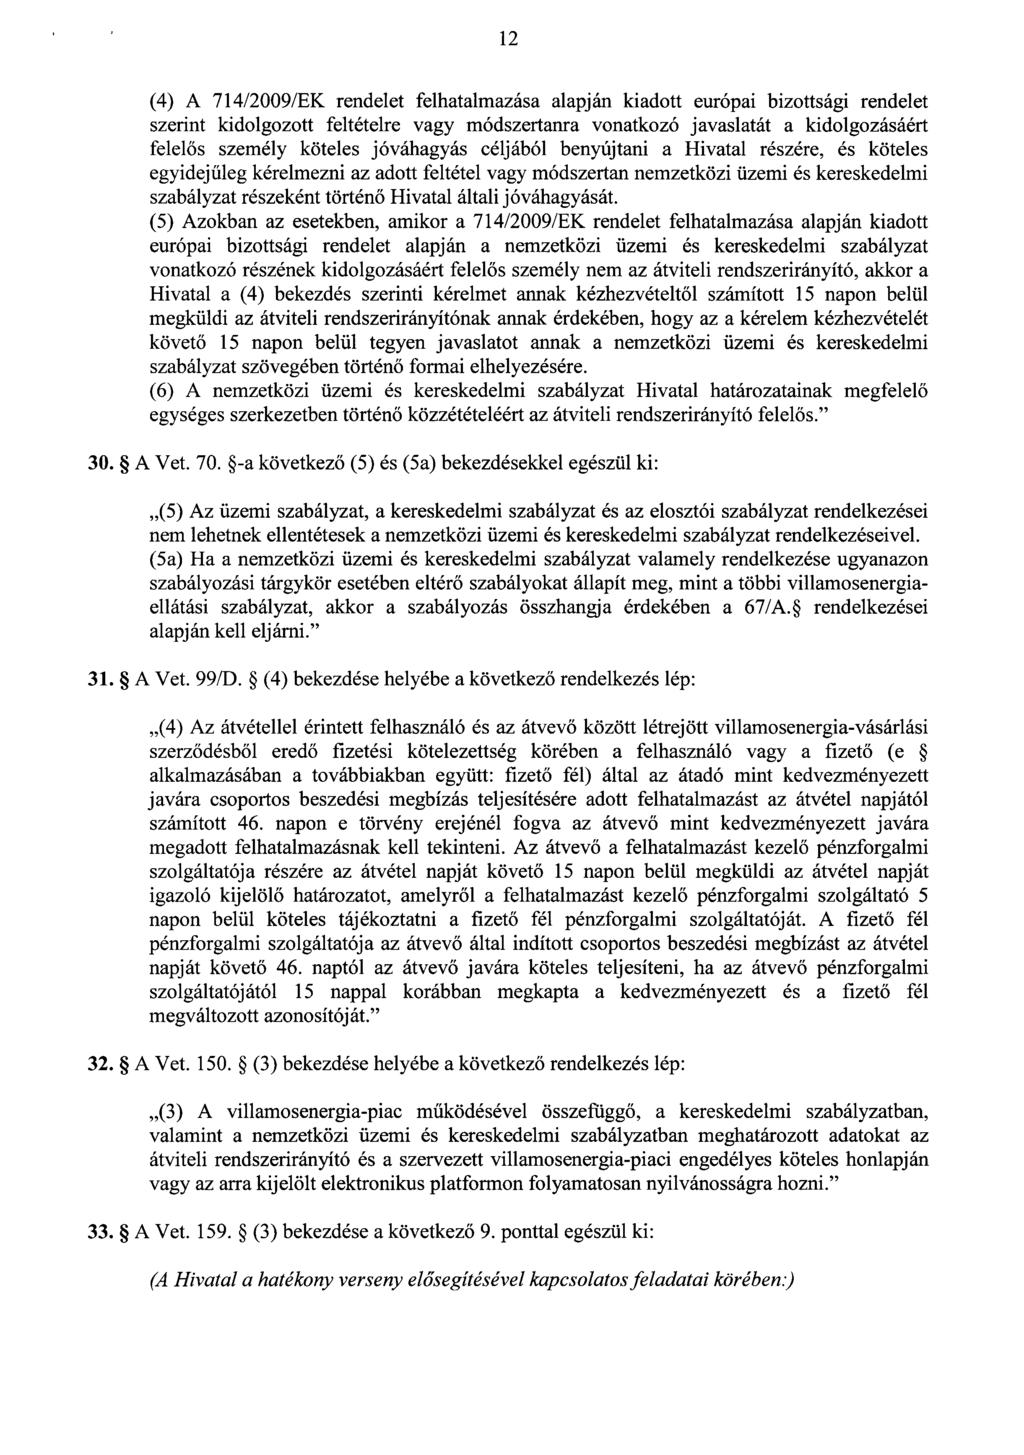 1 2 (4) A 714/2009/EK rendelet felhatalmazása alapján kiadott európai bizottsági rendele t szerint kidolgozott feltételre vagy módszertanra vonatkozó javaslatát a kidolgozásáér t felel ős személy